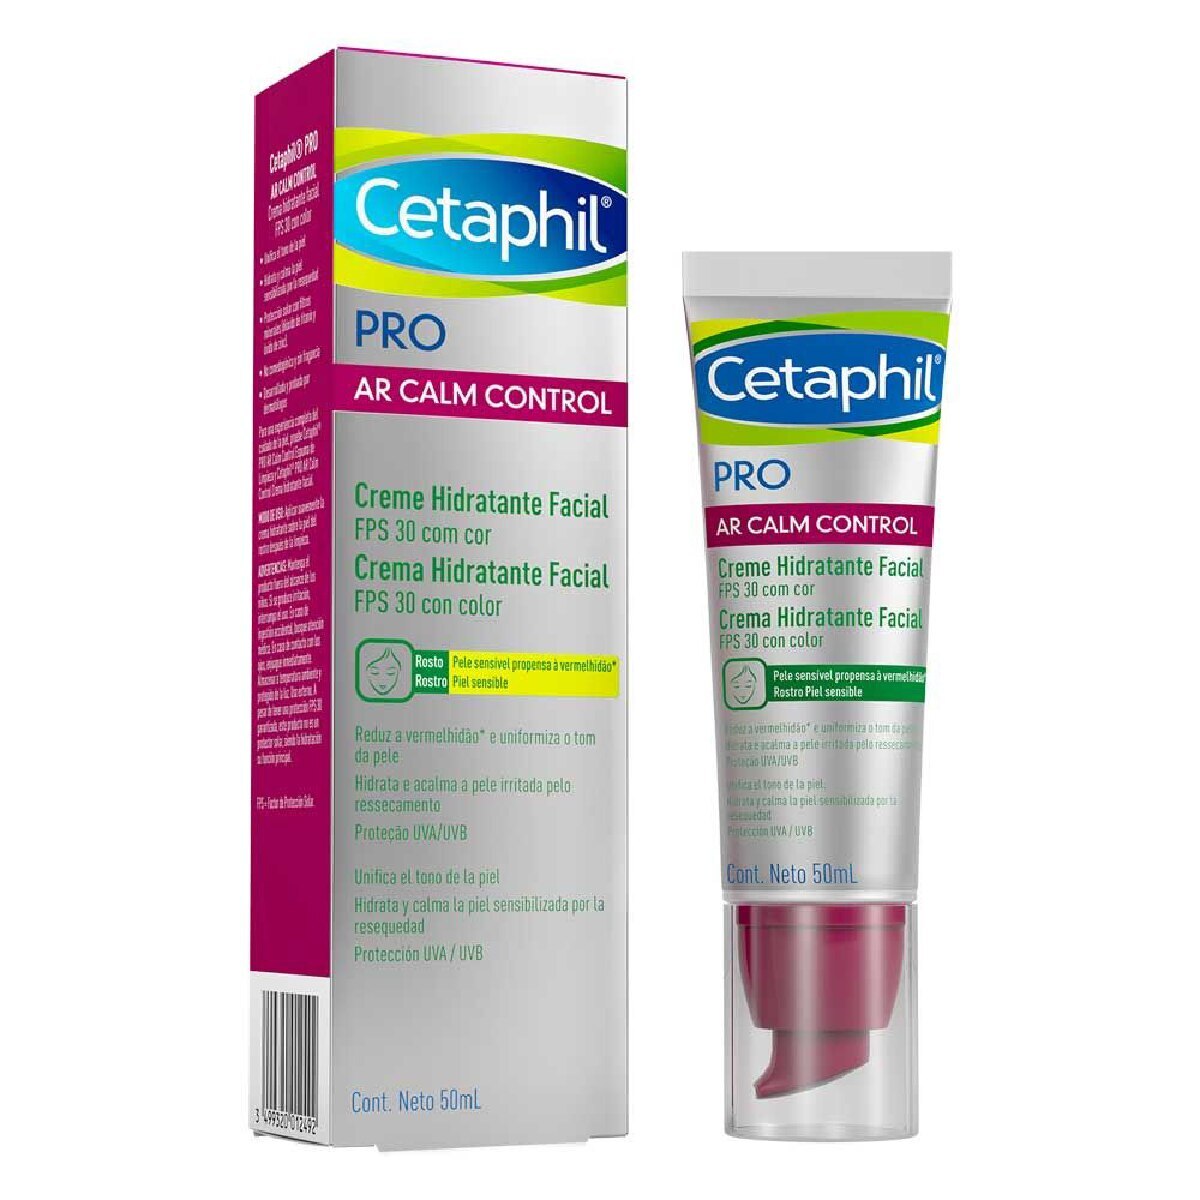 Creme Hidratante Facial Cetaphil Pro Ar Calm Control FPS30 com Cor 50ml